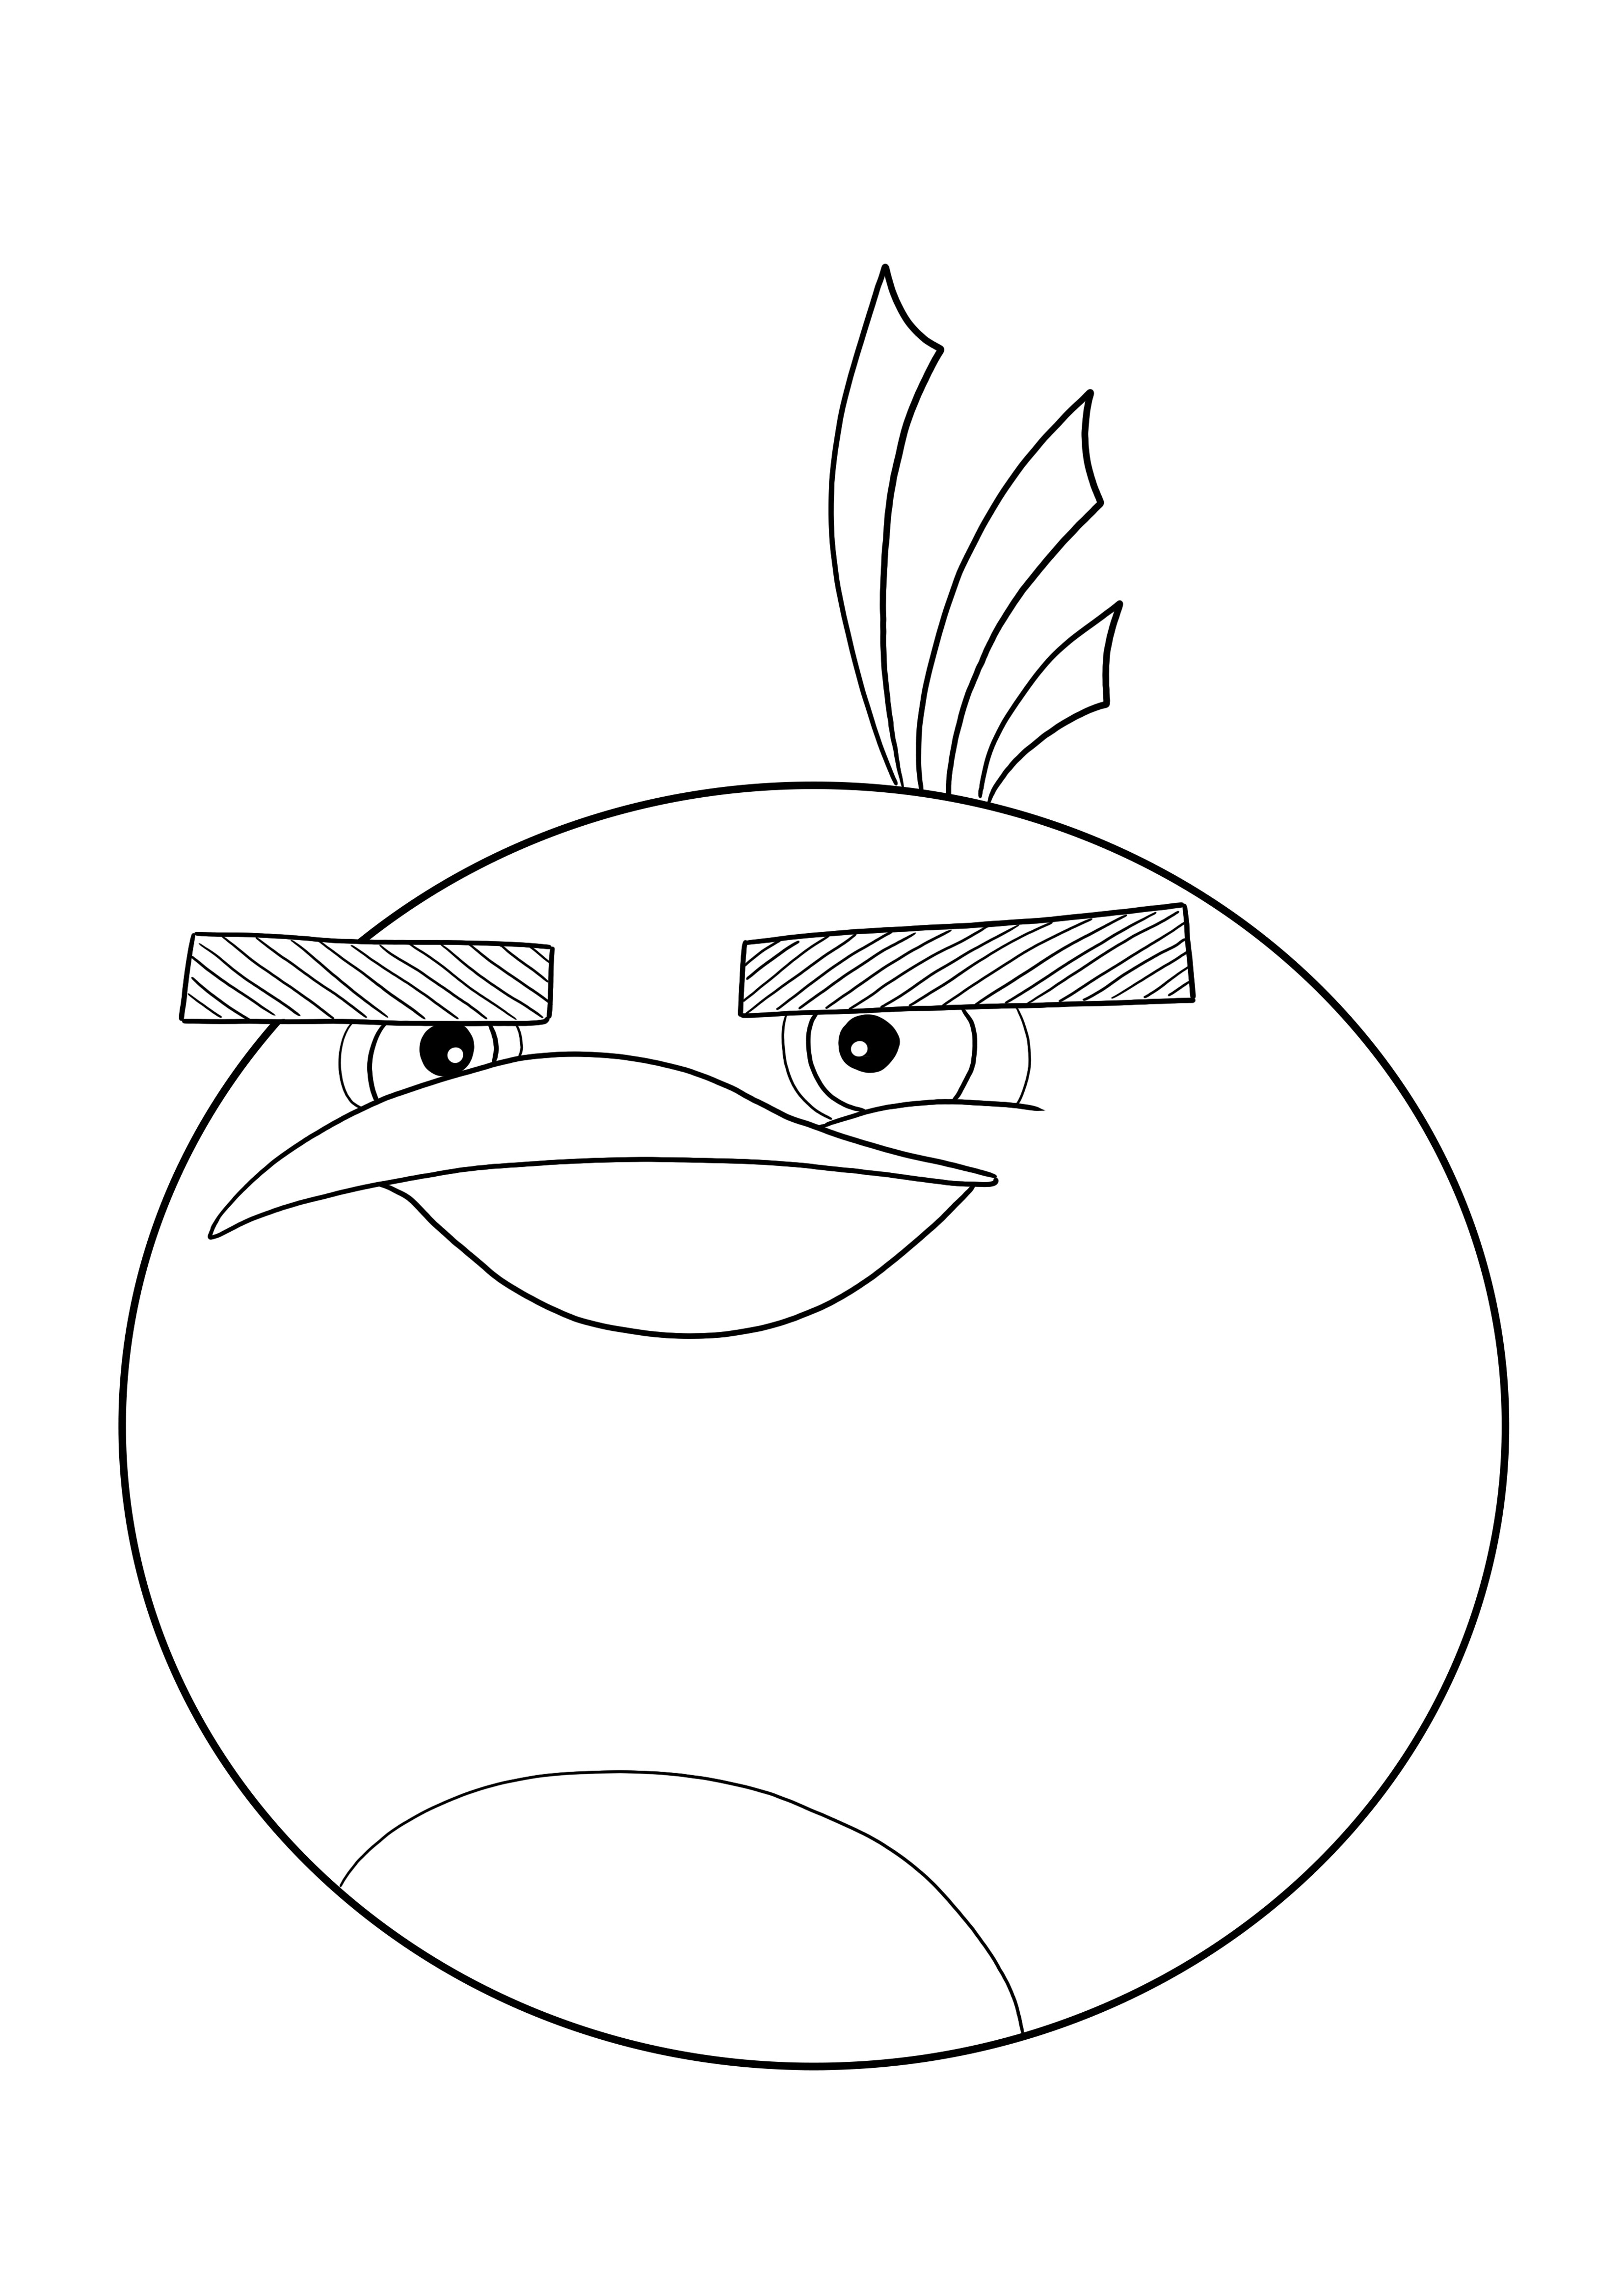 Ingyenesen kinyomtatható és letölthető Bomba színező oldal az Angry Birds-től